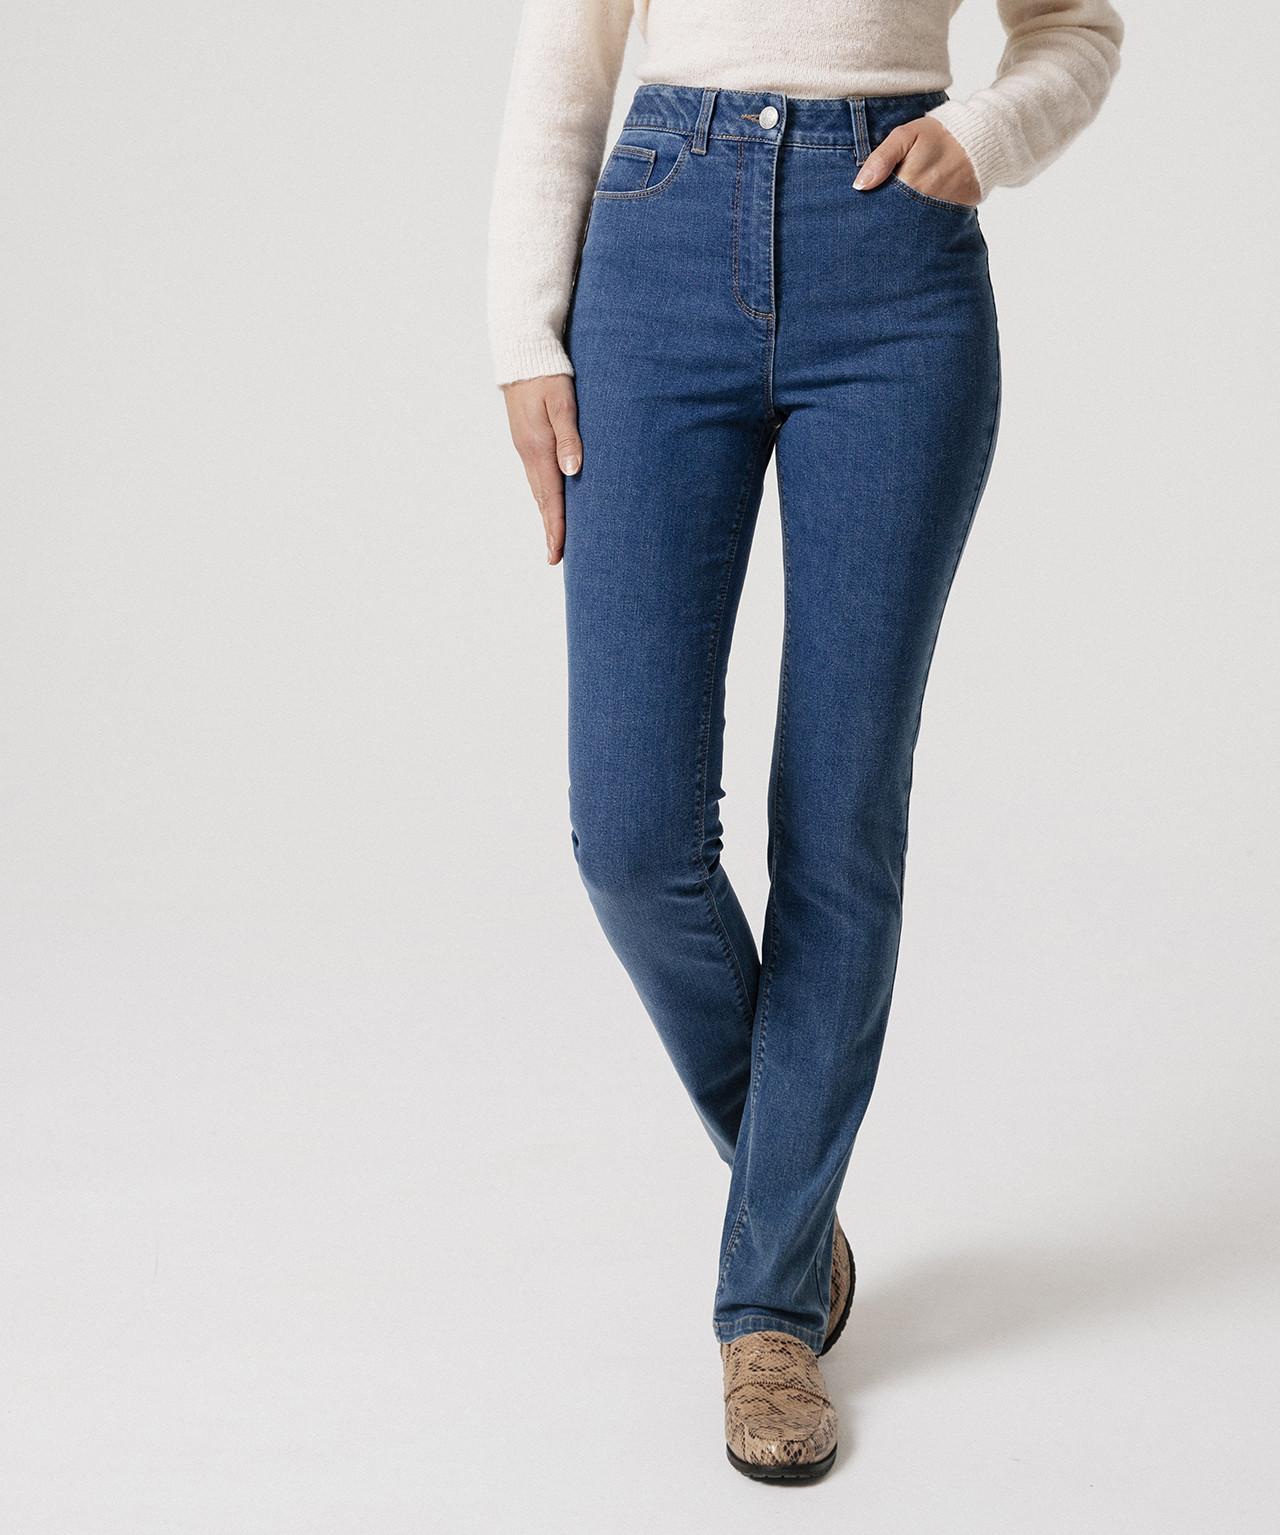 Jeans Mit Hoher Taille, Perfect Fit By , 2 Längen. Damen Blau 40 von Damart